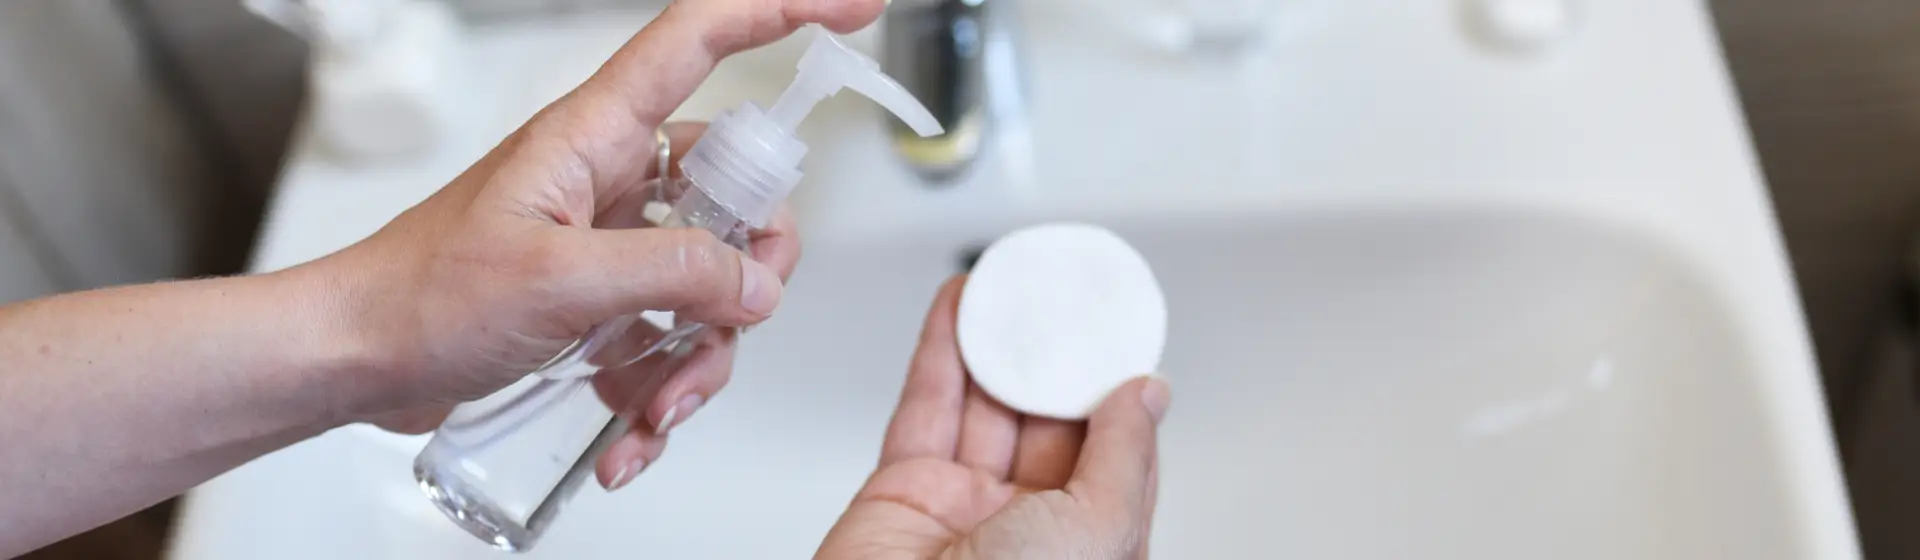 Água micelar: 8 melhores opções do mercado para a limpeza da pele